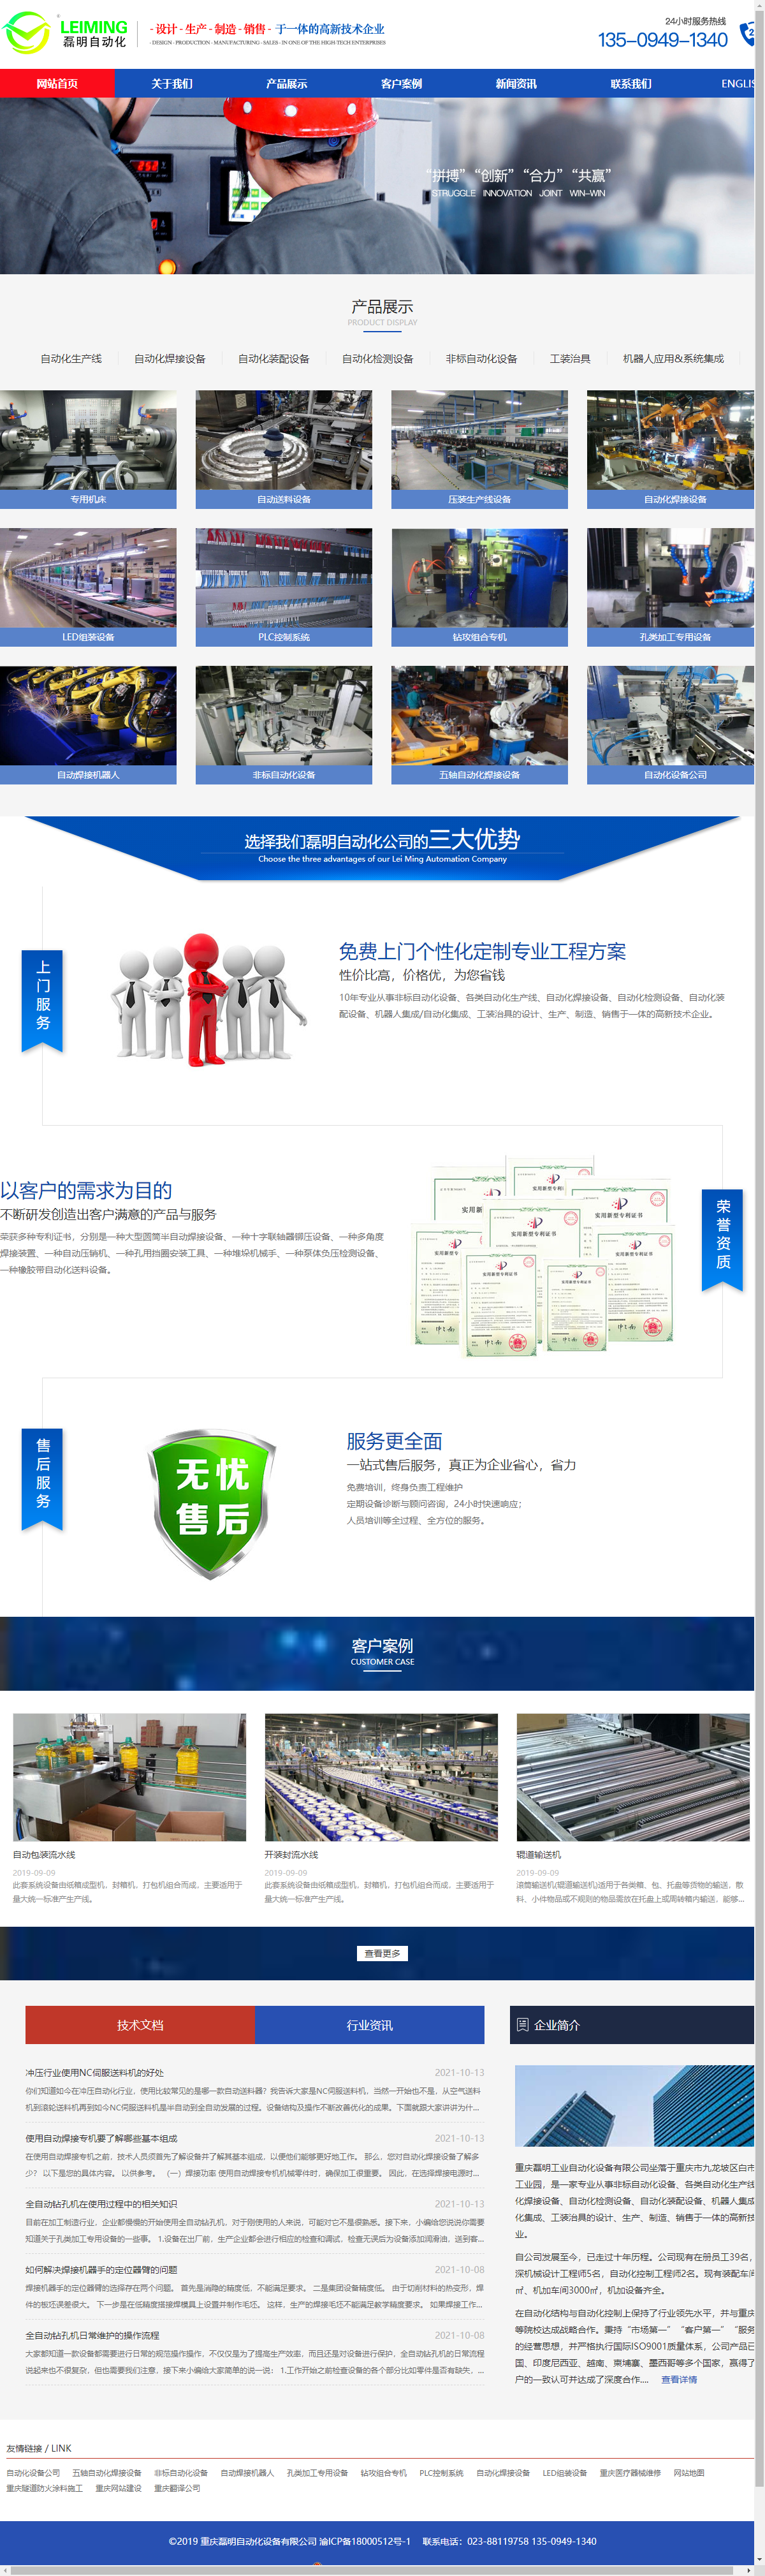 重庆磊明工业自动化设备有限公司网站案例